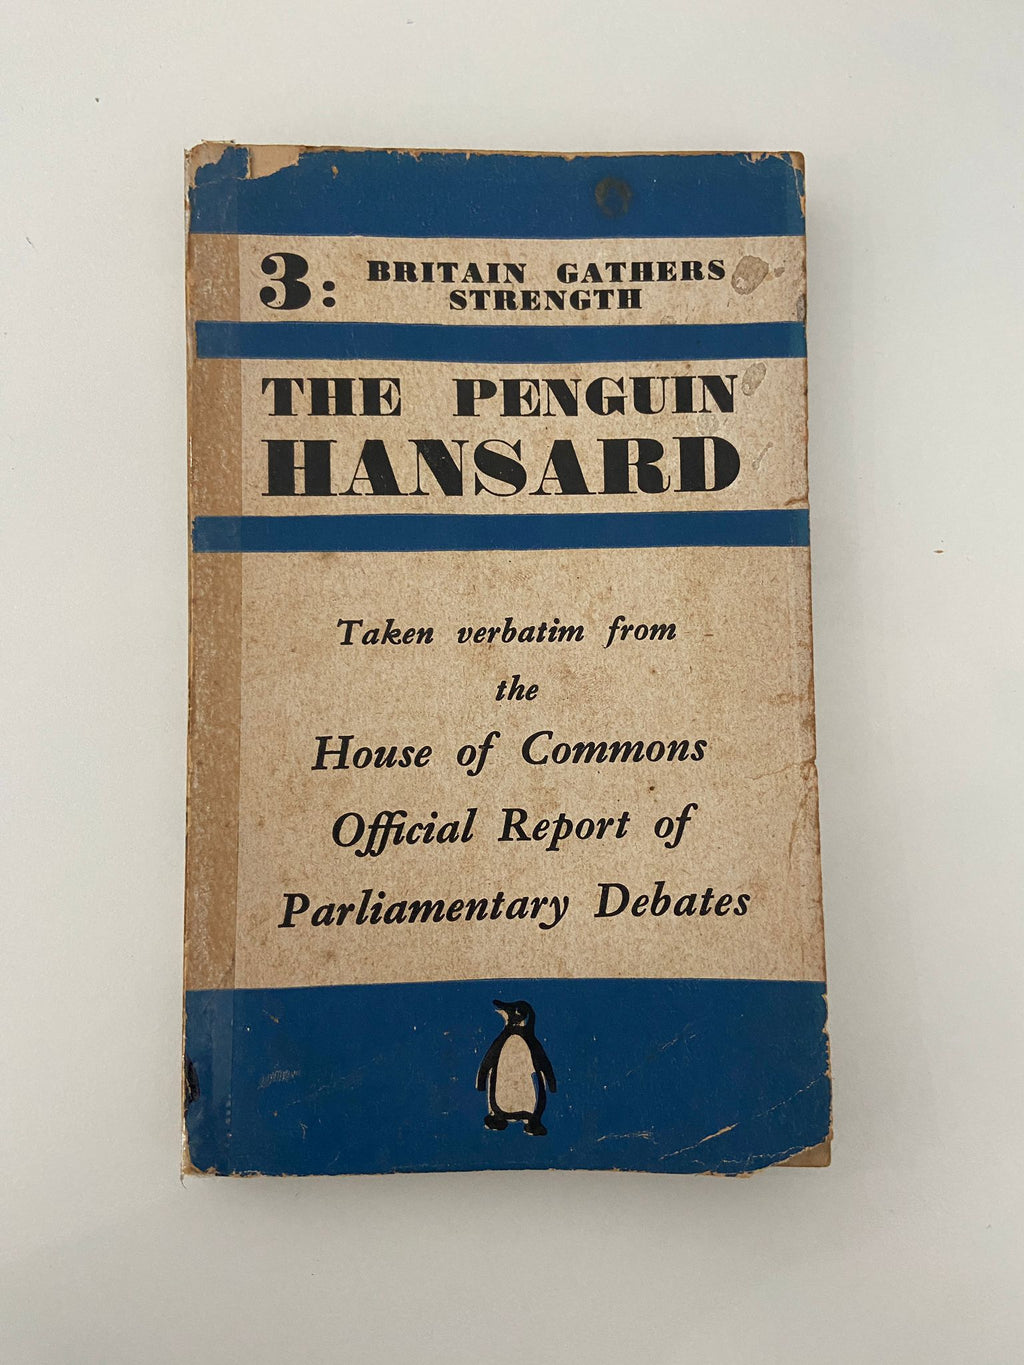 The Penguin Hansard